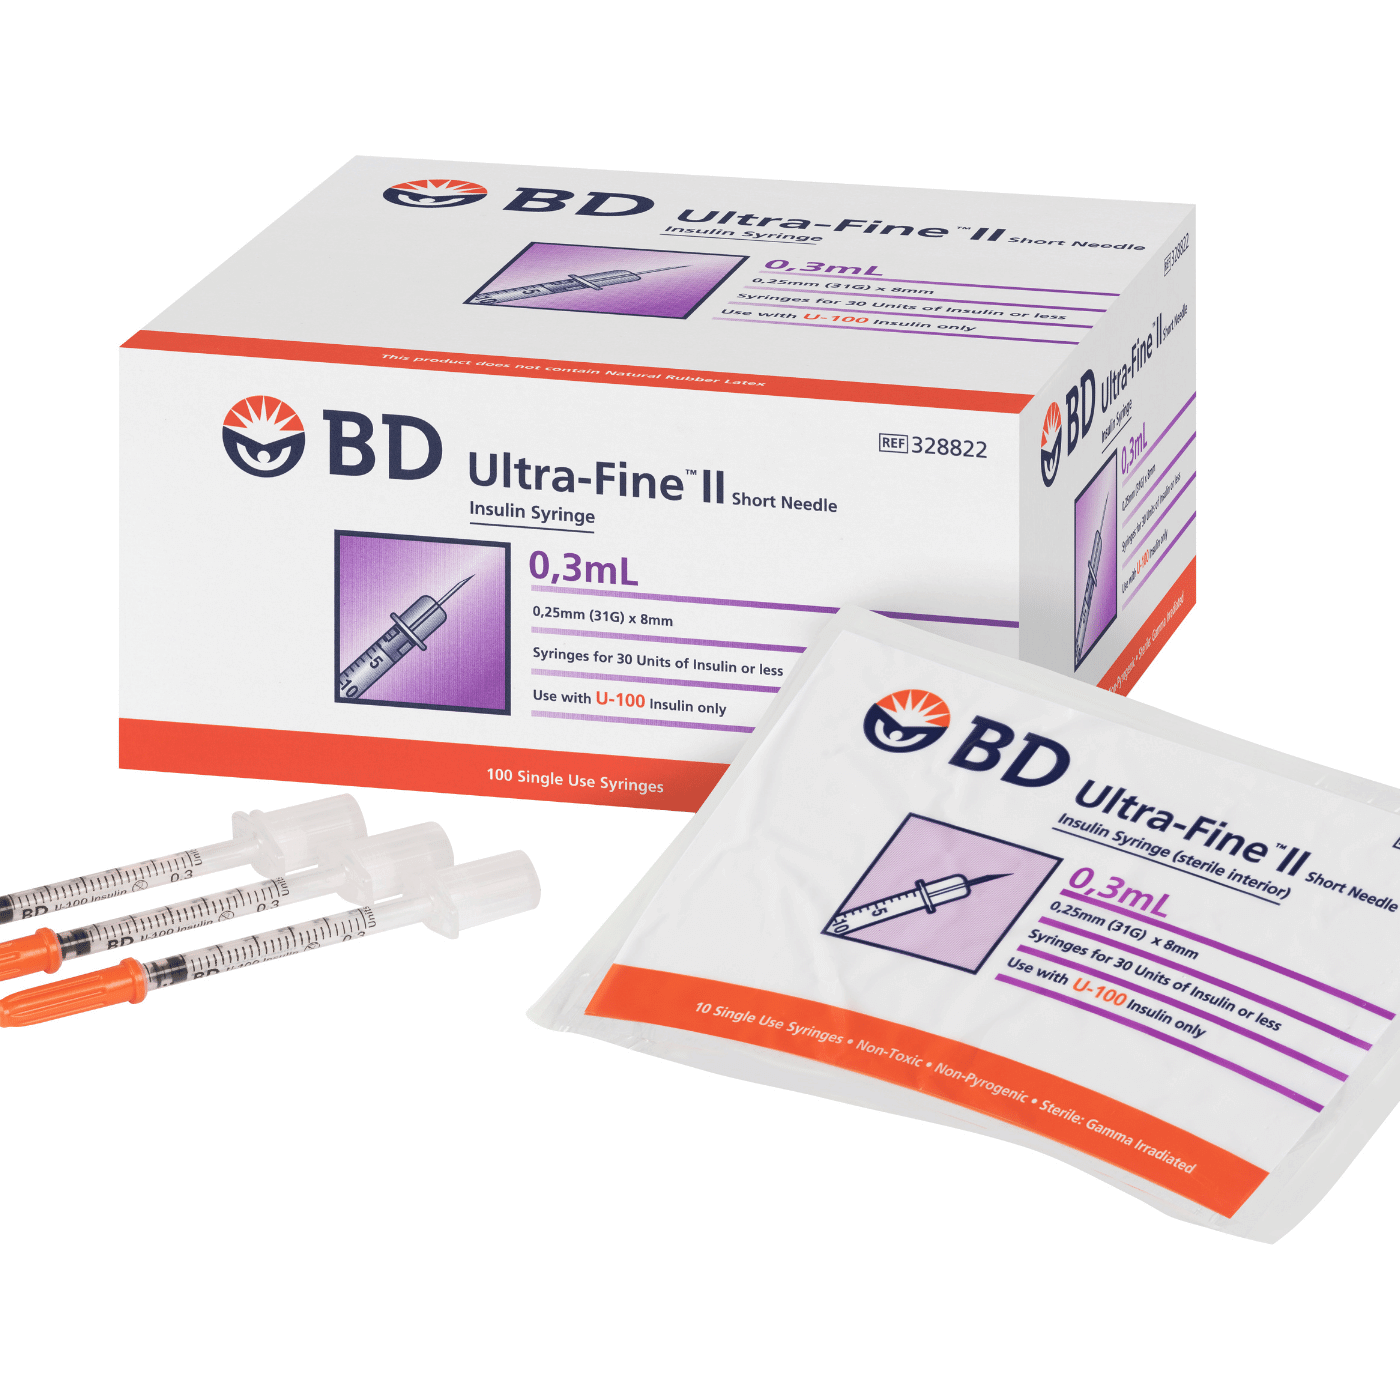 0.3mL_BD_Ultra-Fine_II_Short_Needle_Insulin_Syringe|A Pack Of 100 BD Ultra-Fine II Syringes And Needle